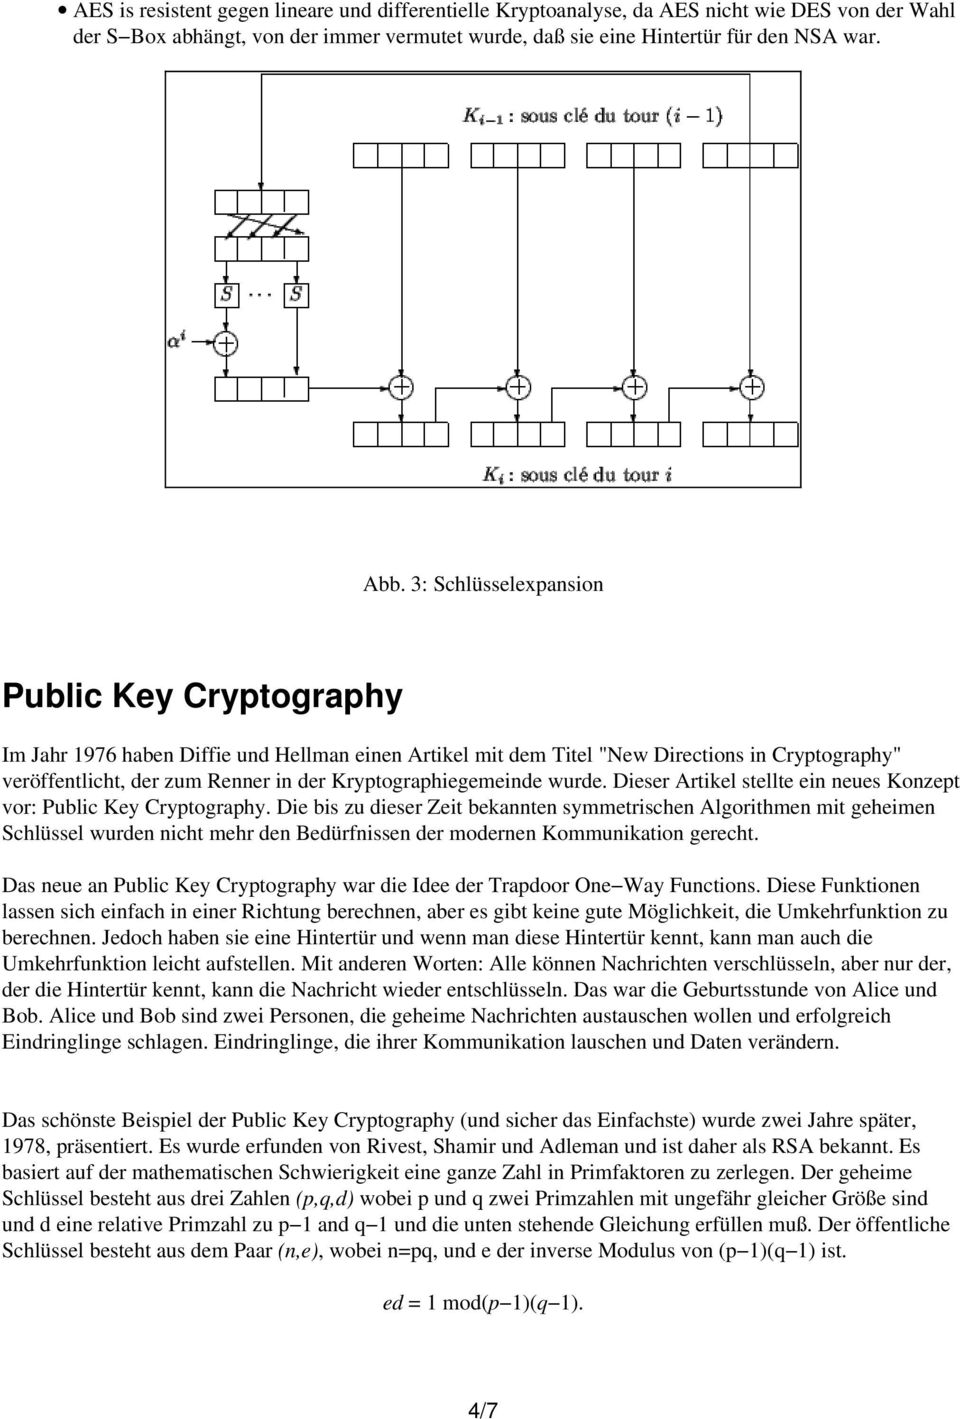 Kryptographiegemeinde wurde. Dieser Artikel stellte ein neues Konzept vor: Public Key Cryptography.